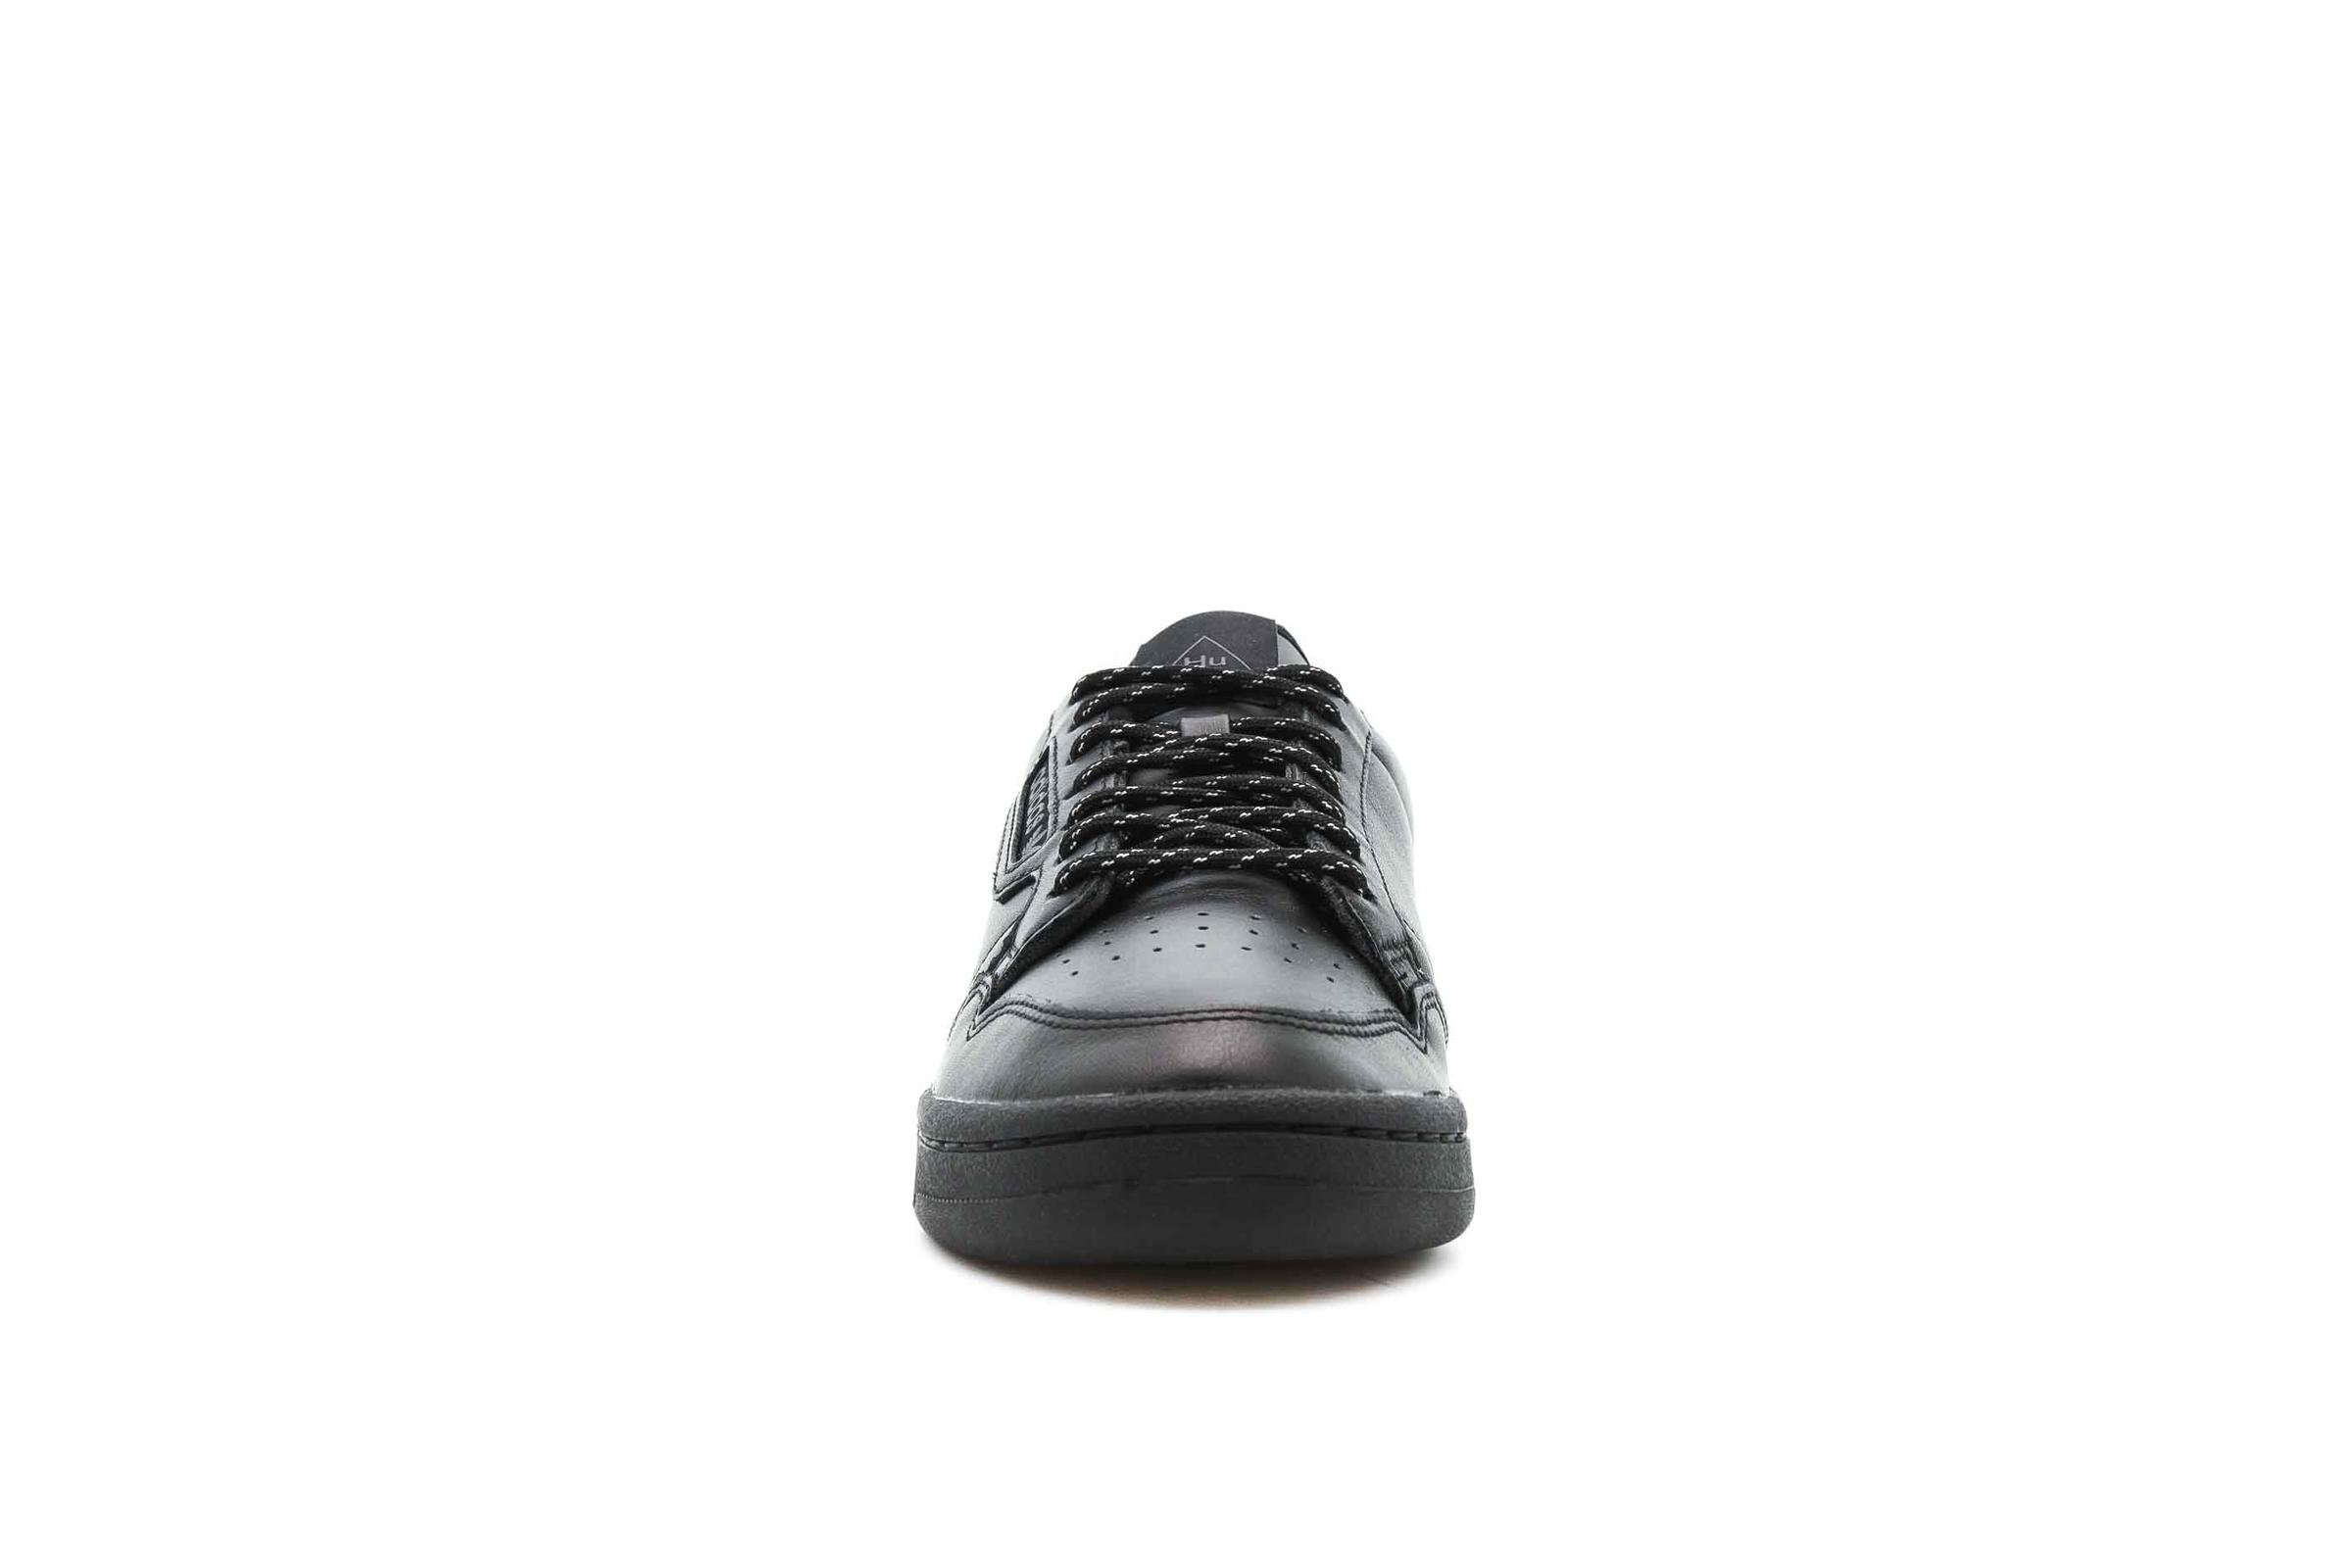 adidas Originals x HU CONTINENTAL 80 "CORE BLACK"